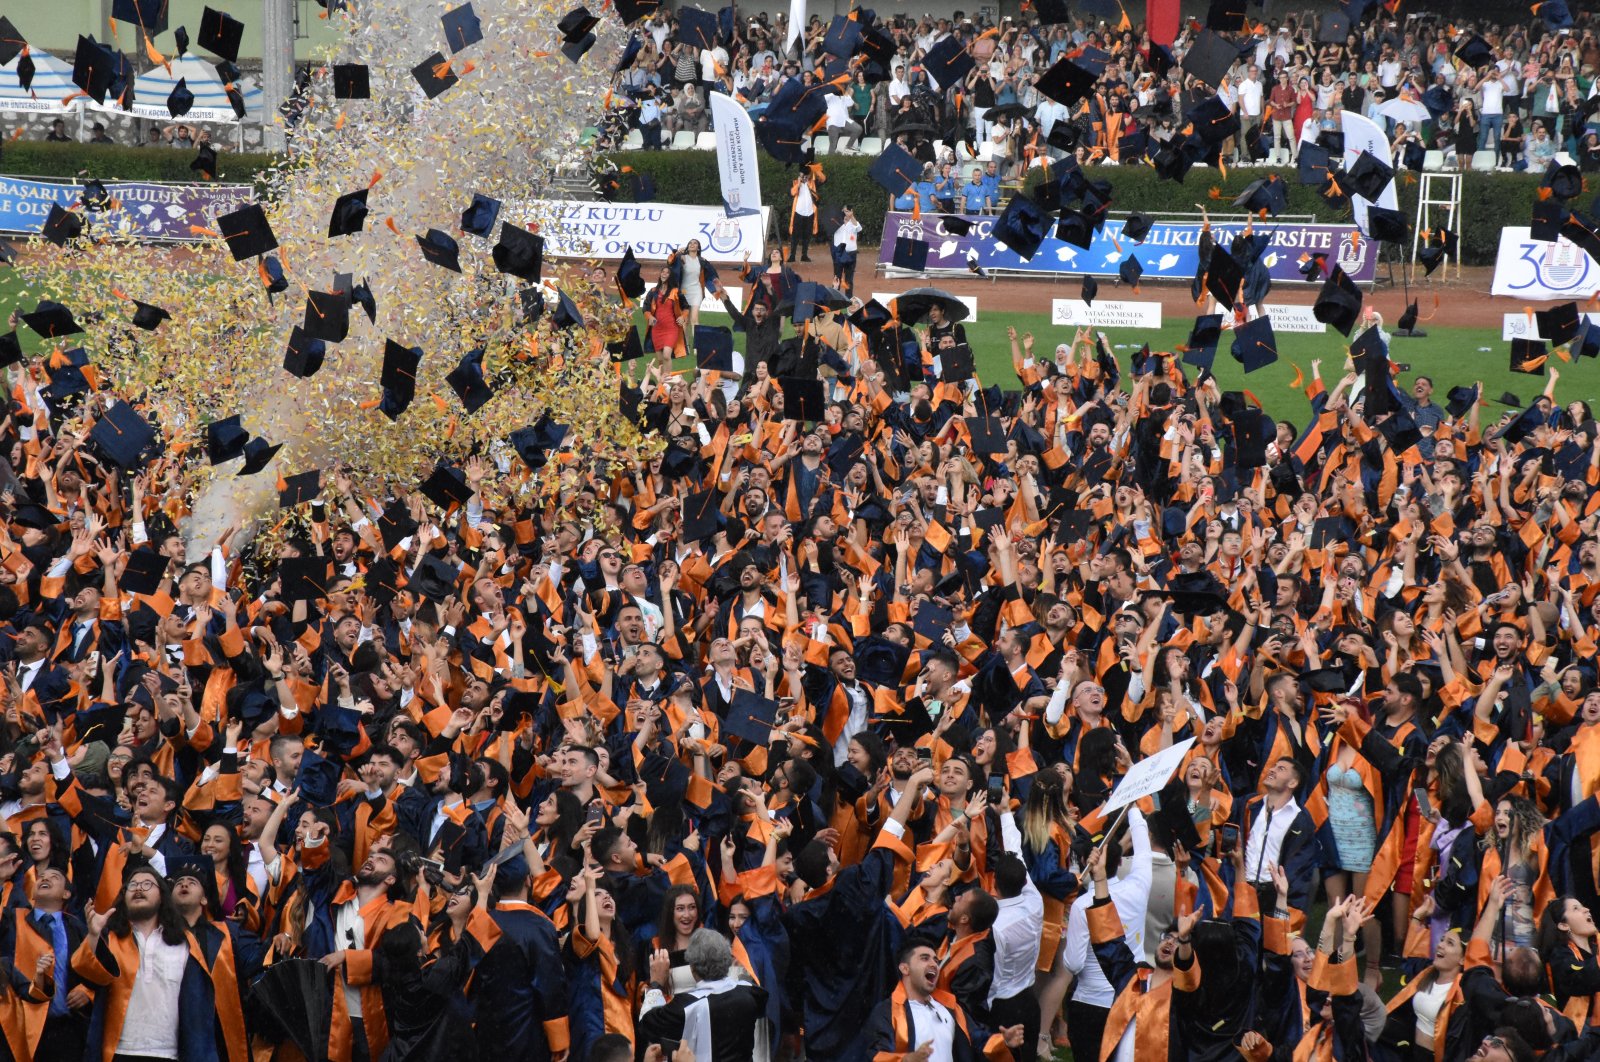 Students attend a graduation ceremony at Muğla Sıtkı Koçman University, in Muğla, southwestern Turkey, June 13, 2022. (AA PHOTO)